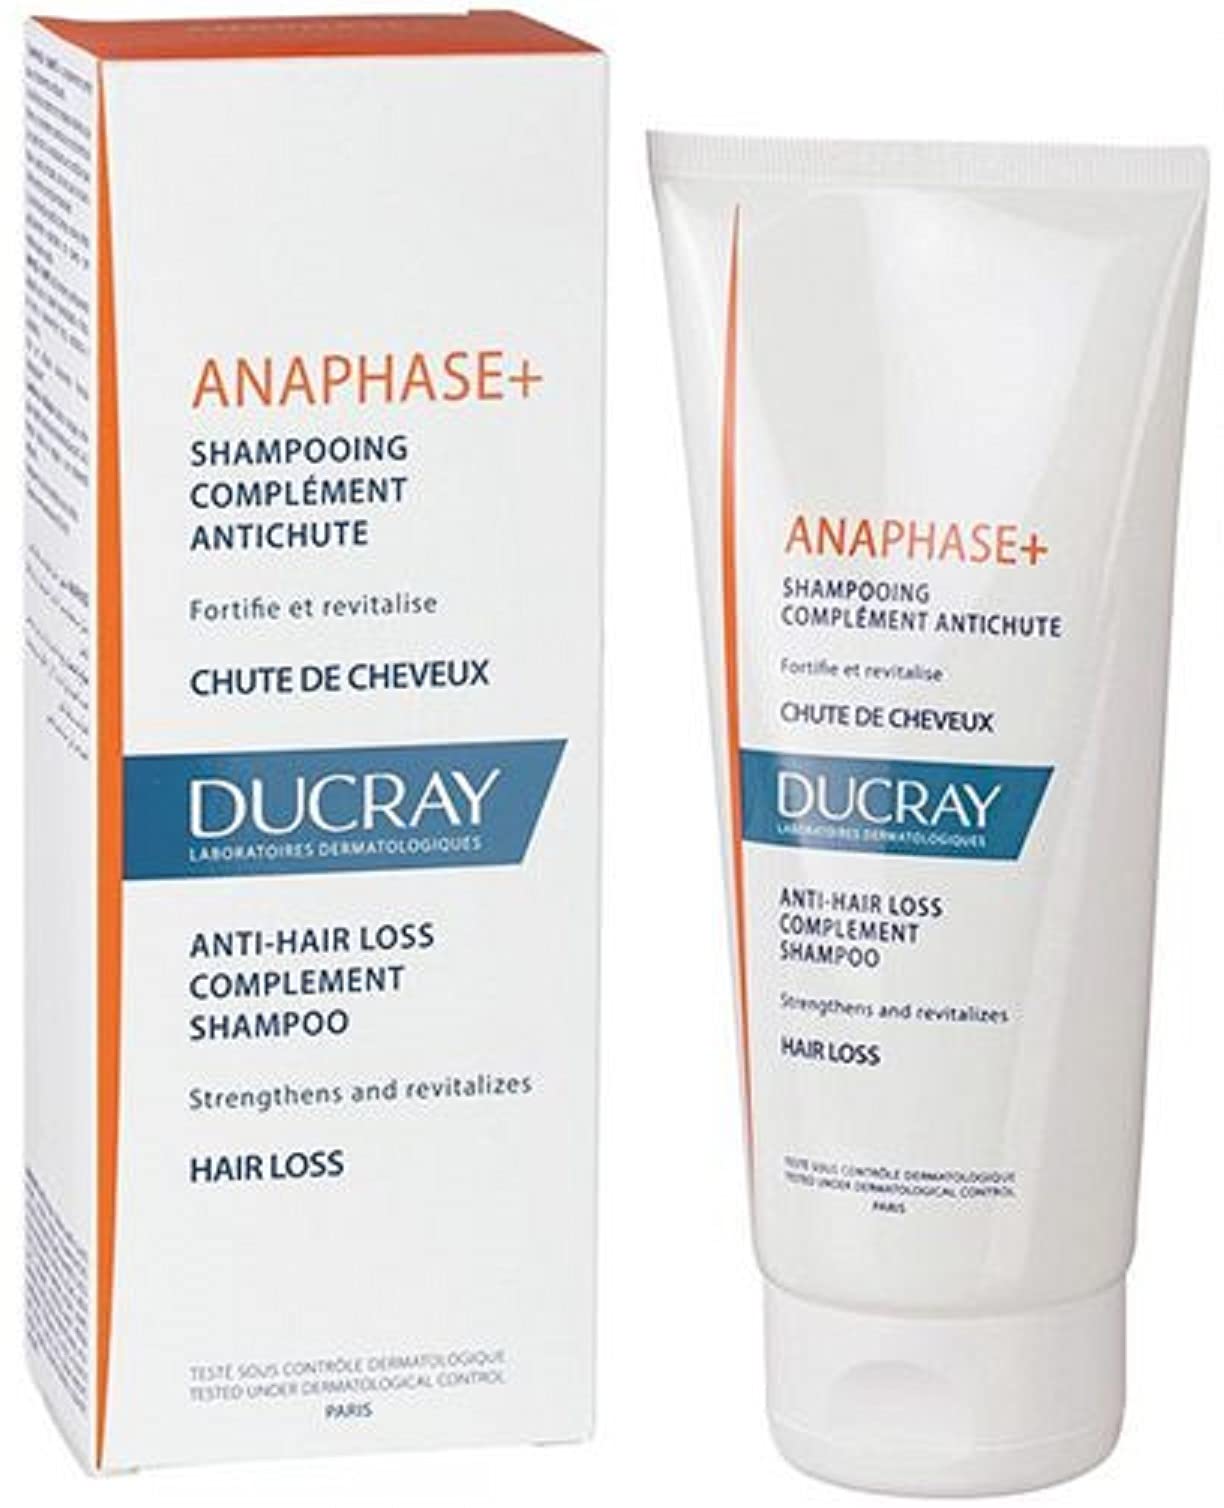 ducray anaphase+ szampon przeciw wypadaniu włosów 400ml anaphase+ odżywka 200ml